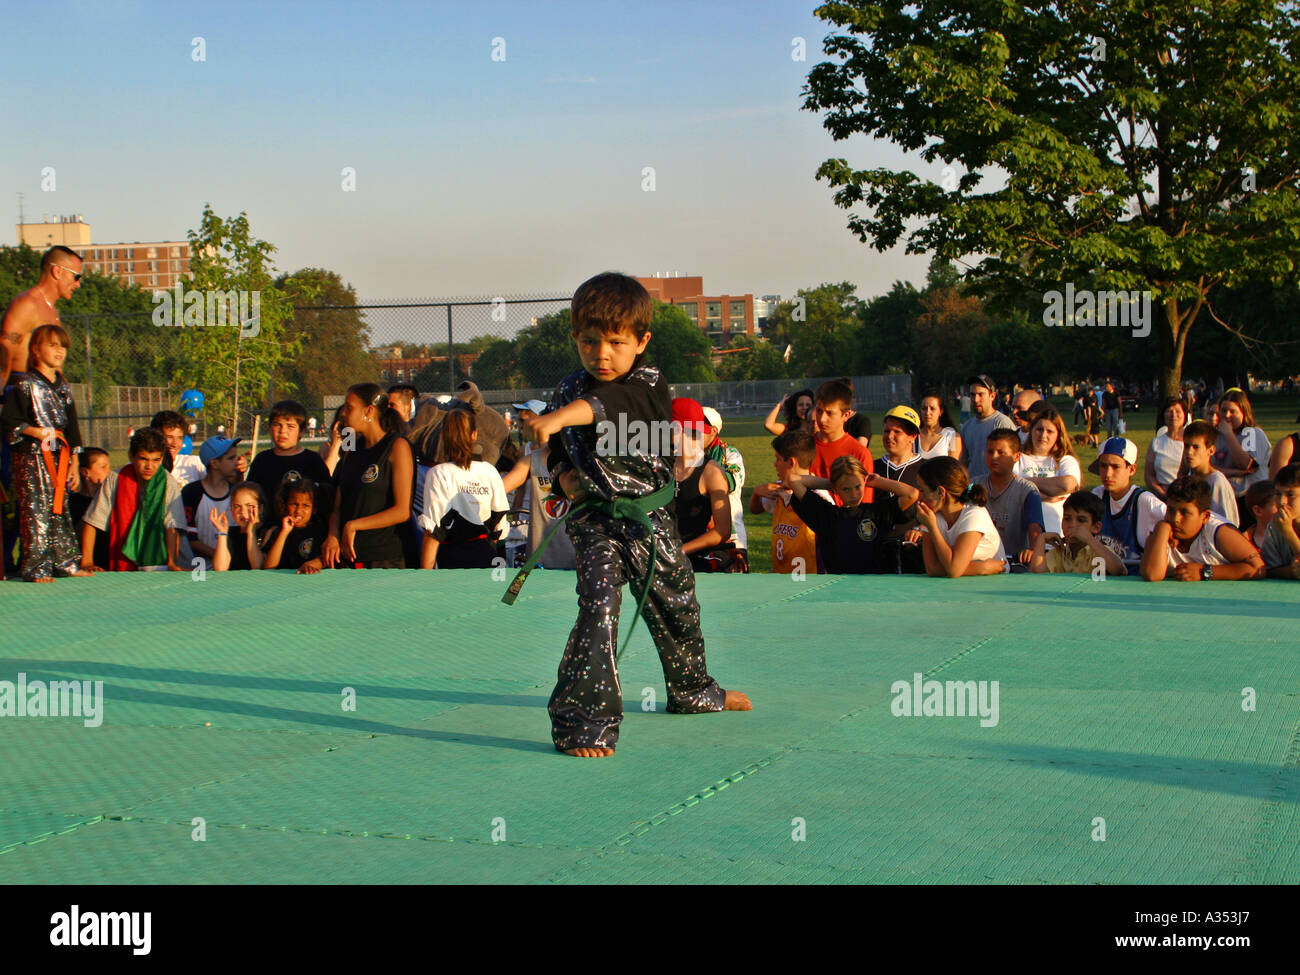 Junge demonstriert eine Karate-Bewegung auf einer Freilichtbühne im Park. Jugendlichen Publikum beobachten. Toronto, Ontario, Kanada Stockfoto